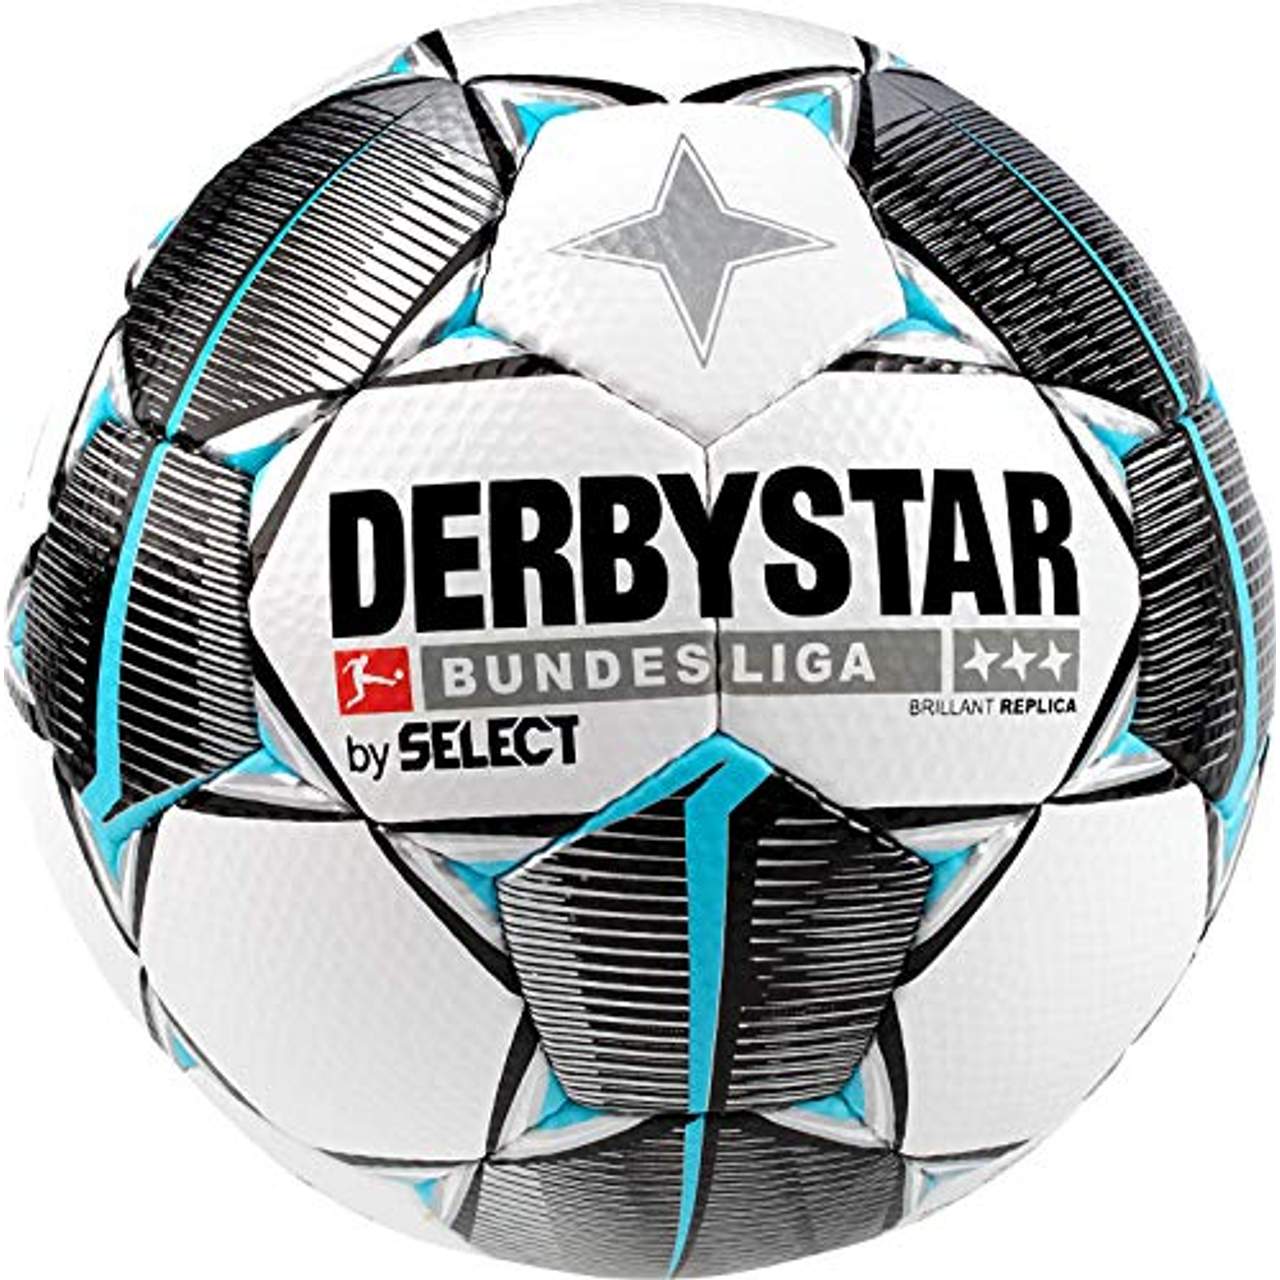 Derbystar Unisex Erwachsene Bundesliga Brillant Replica Fußball